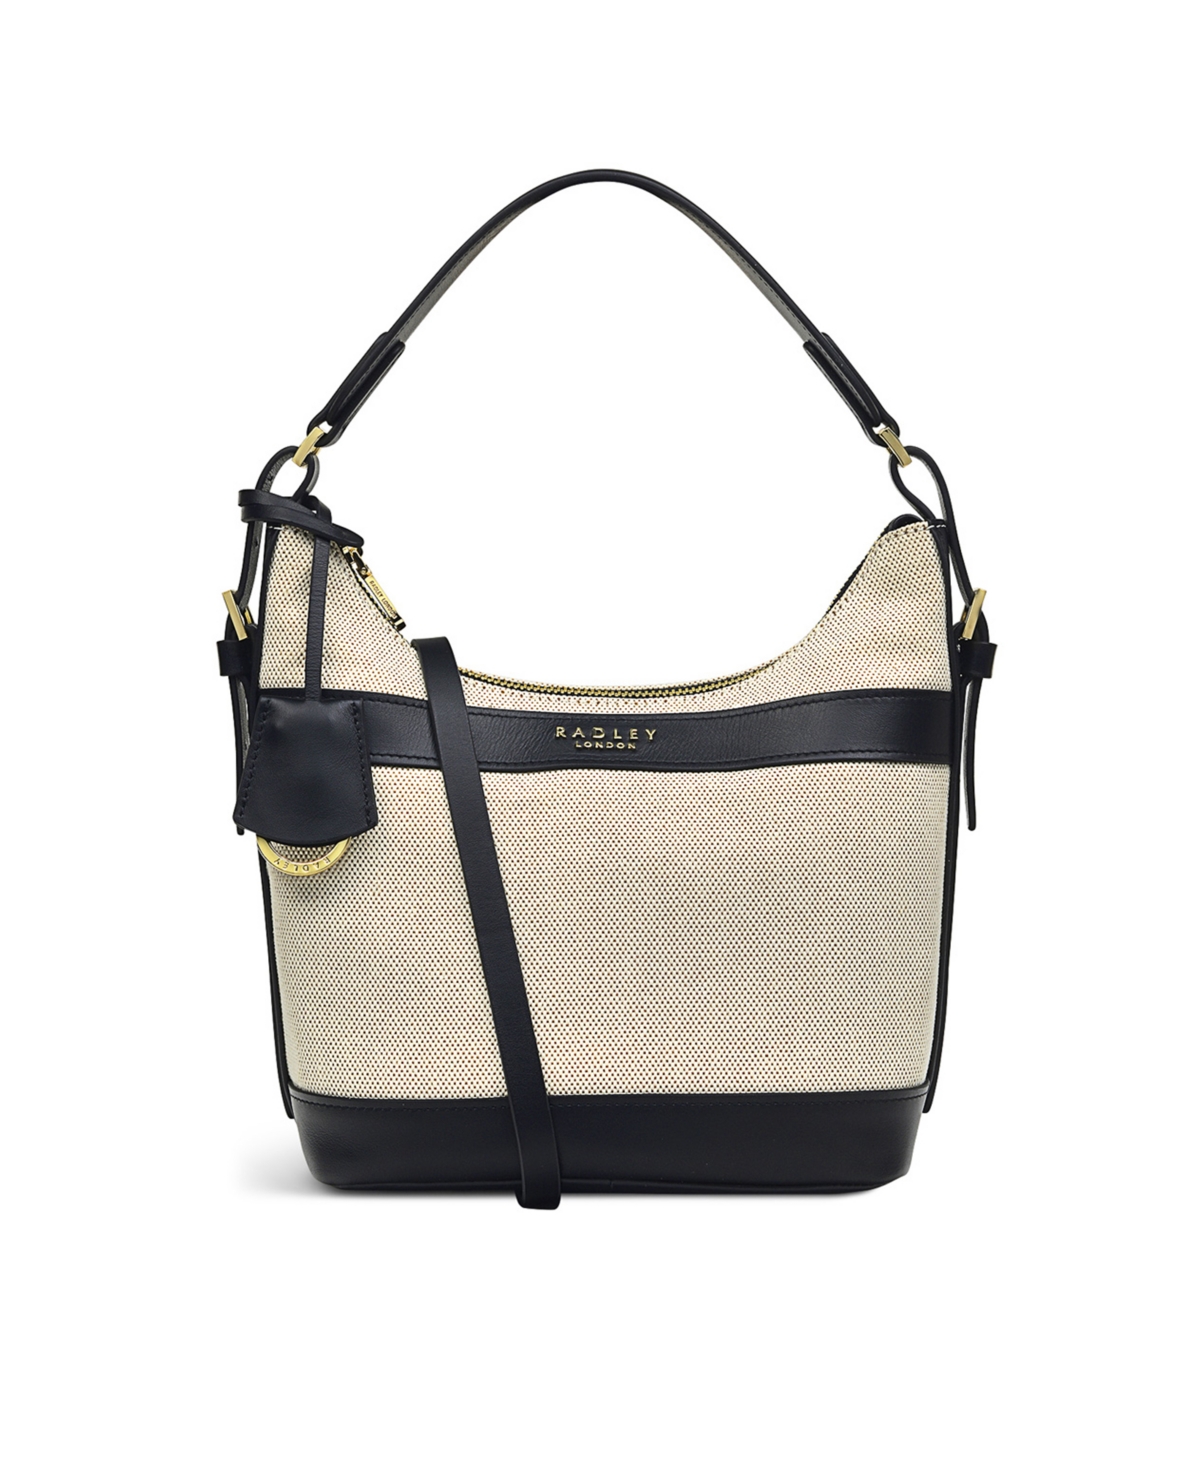 RADLEY London Buxton Avenue - Women's Leather Shoulder Bag - Medium Size  Purse - Women's Shoulder Handbag